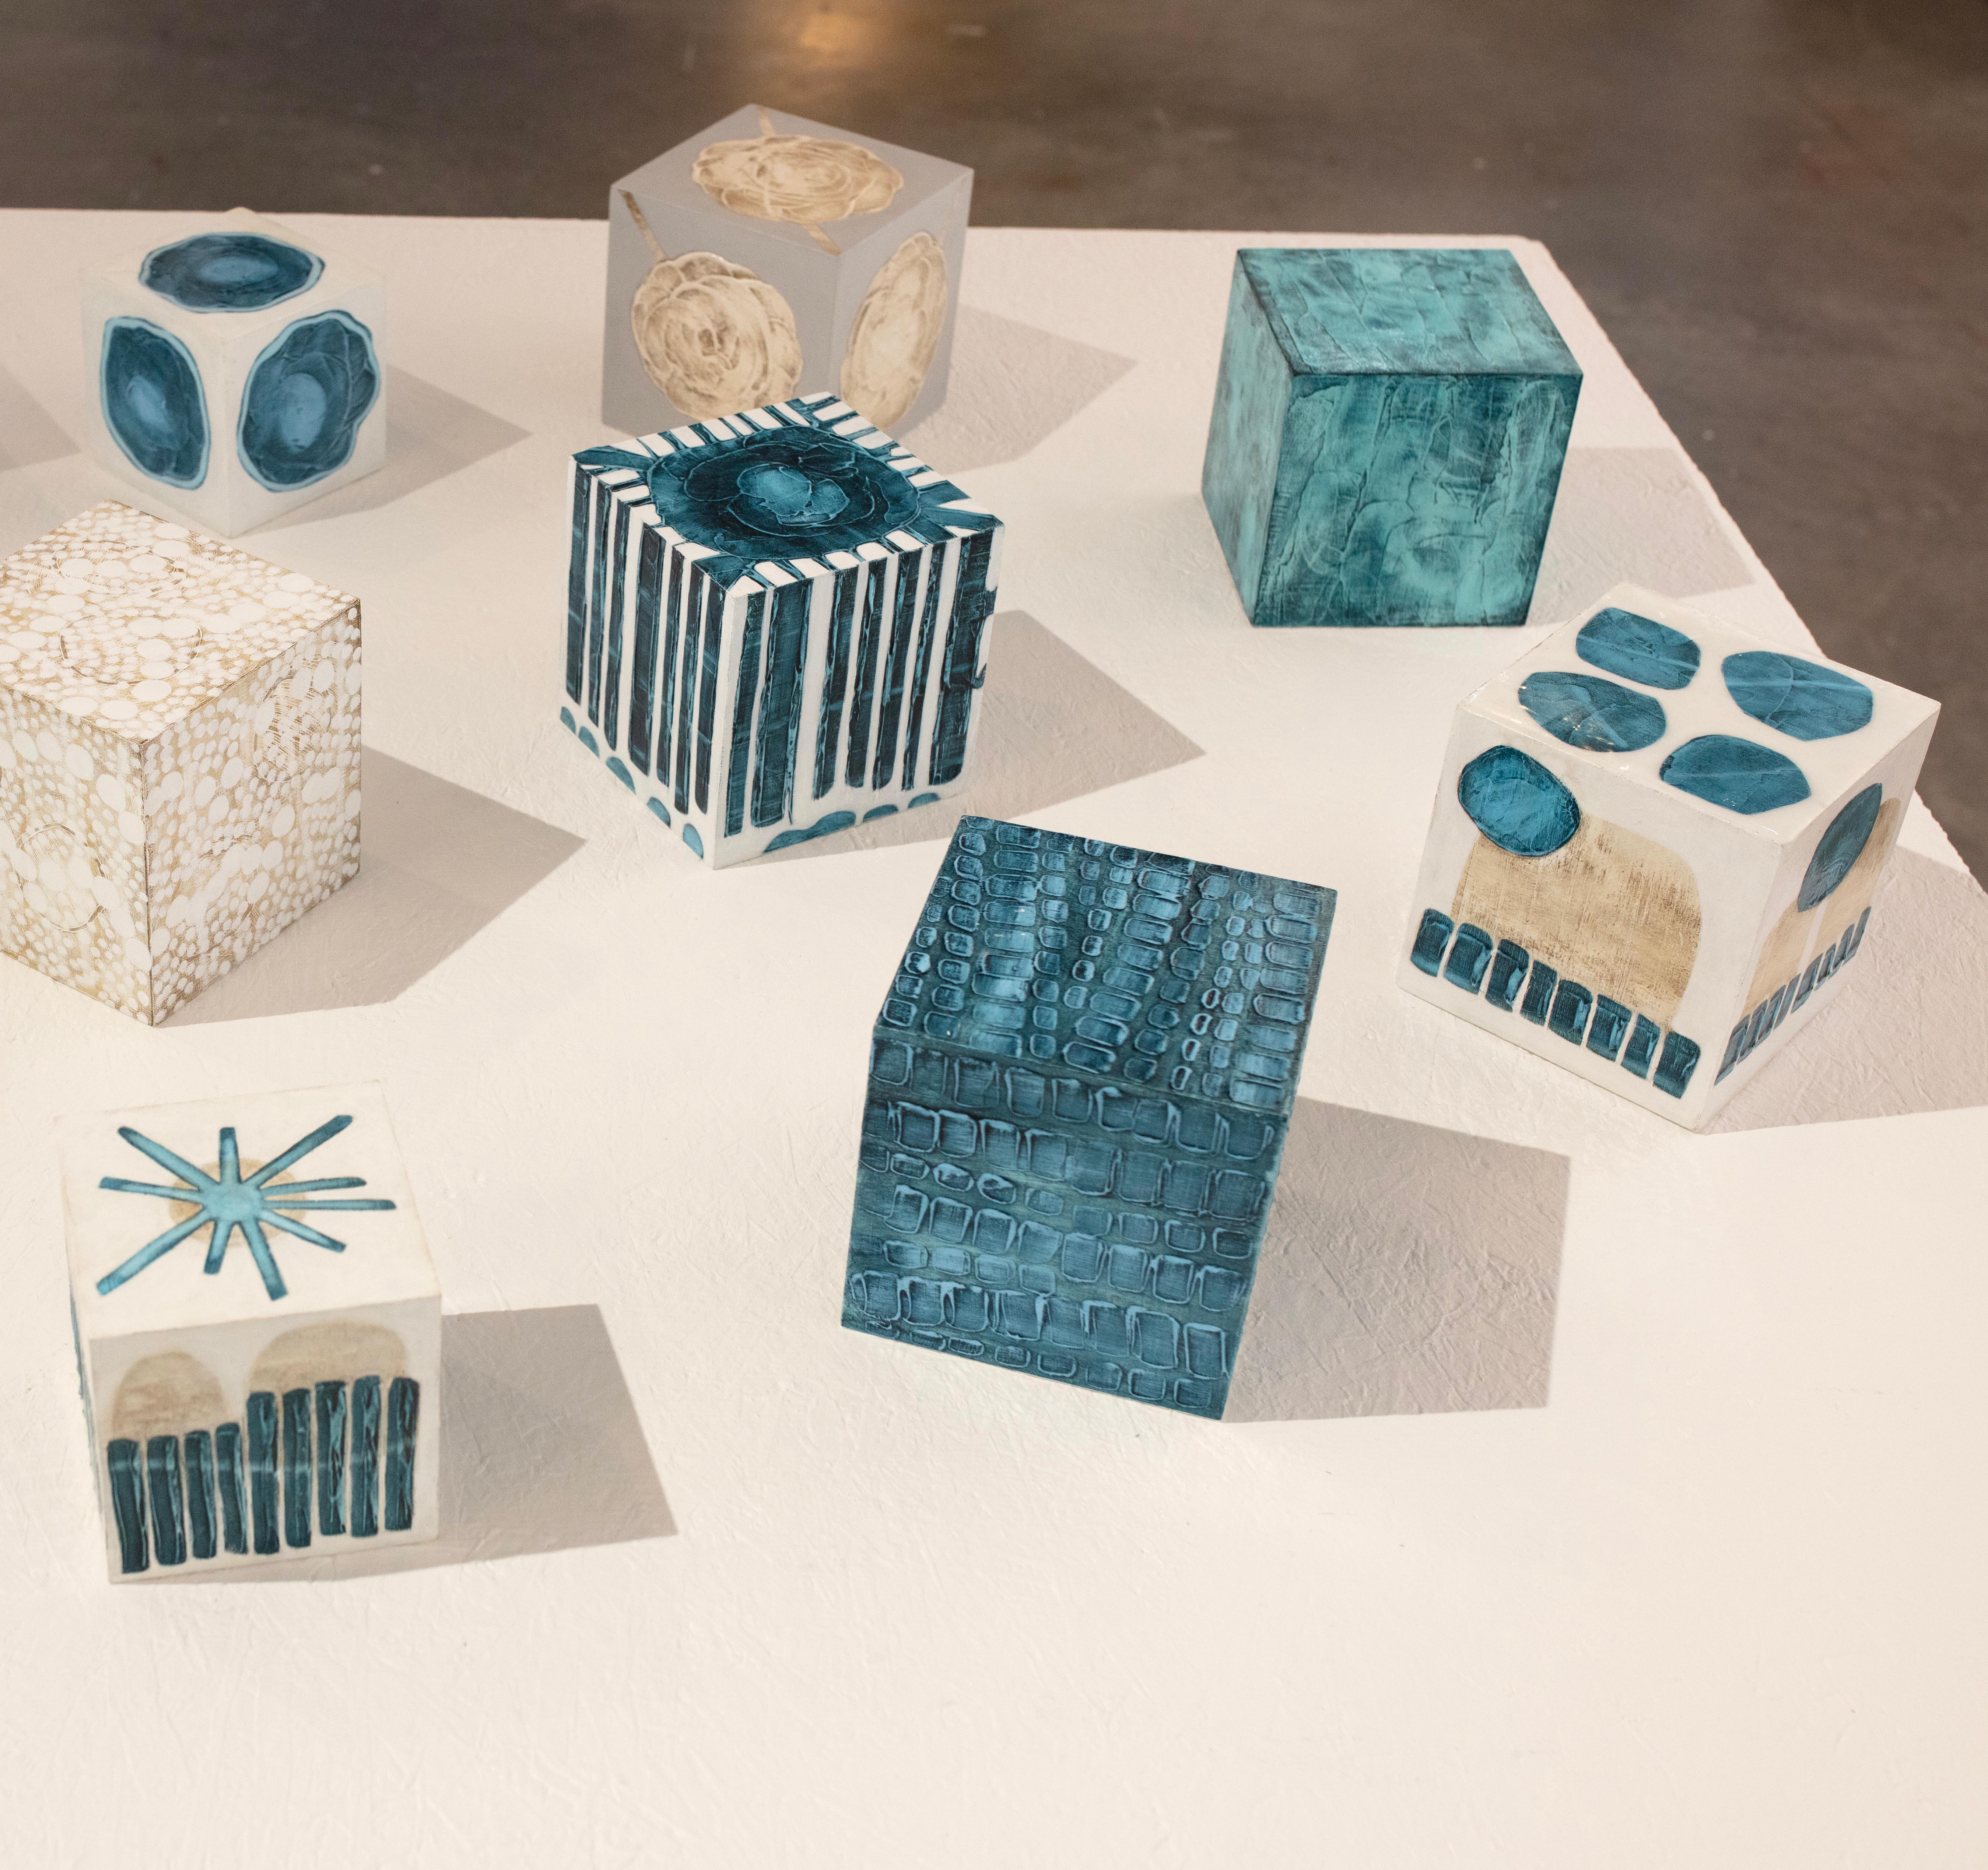 Ce cube sculptural de 5 pouces peint à la main par Sofie Swann est réalisé avec de la peinture acrylique et du gesso sur bois. Elle présente une palette de sarcelles profondes avec des formes rectangulaires légèrement texturées gravées dans la